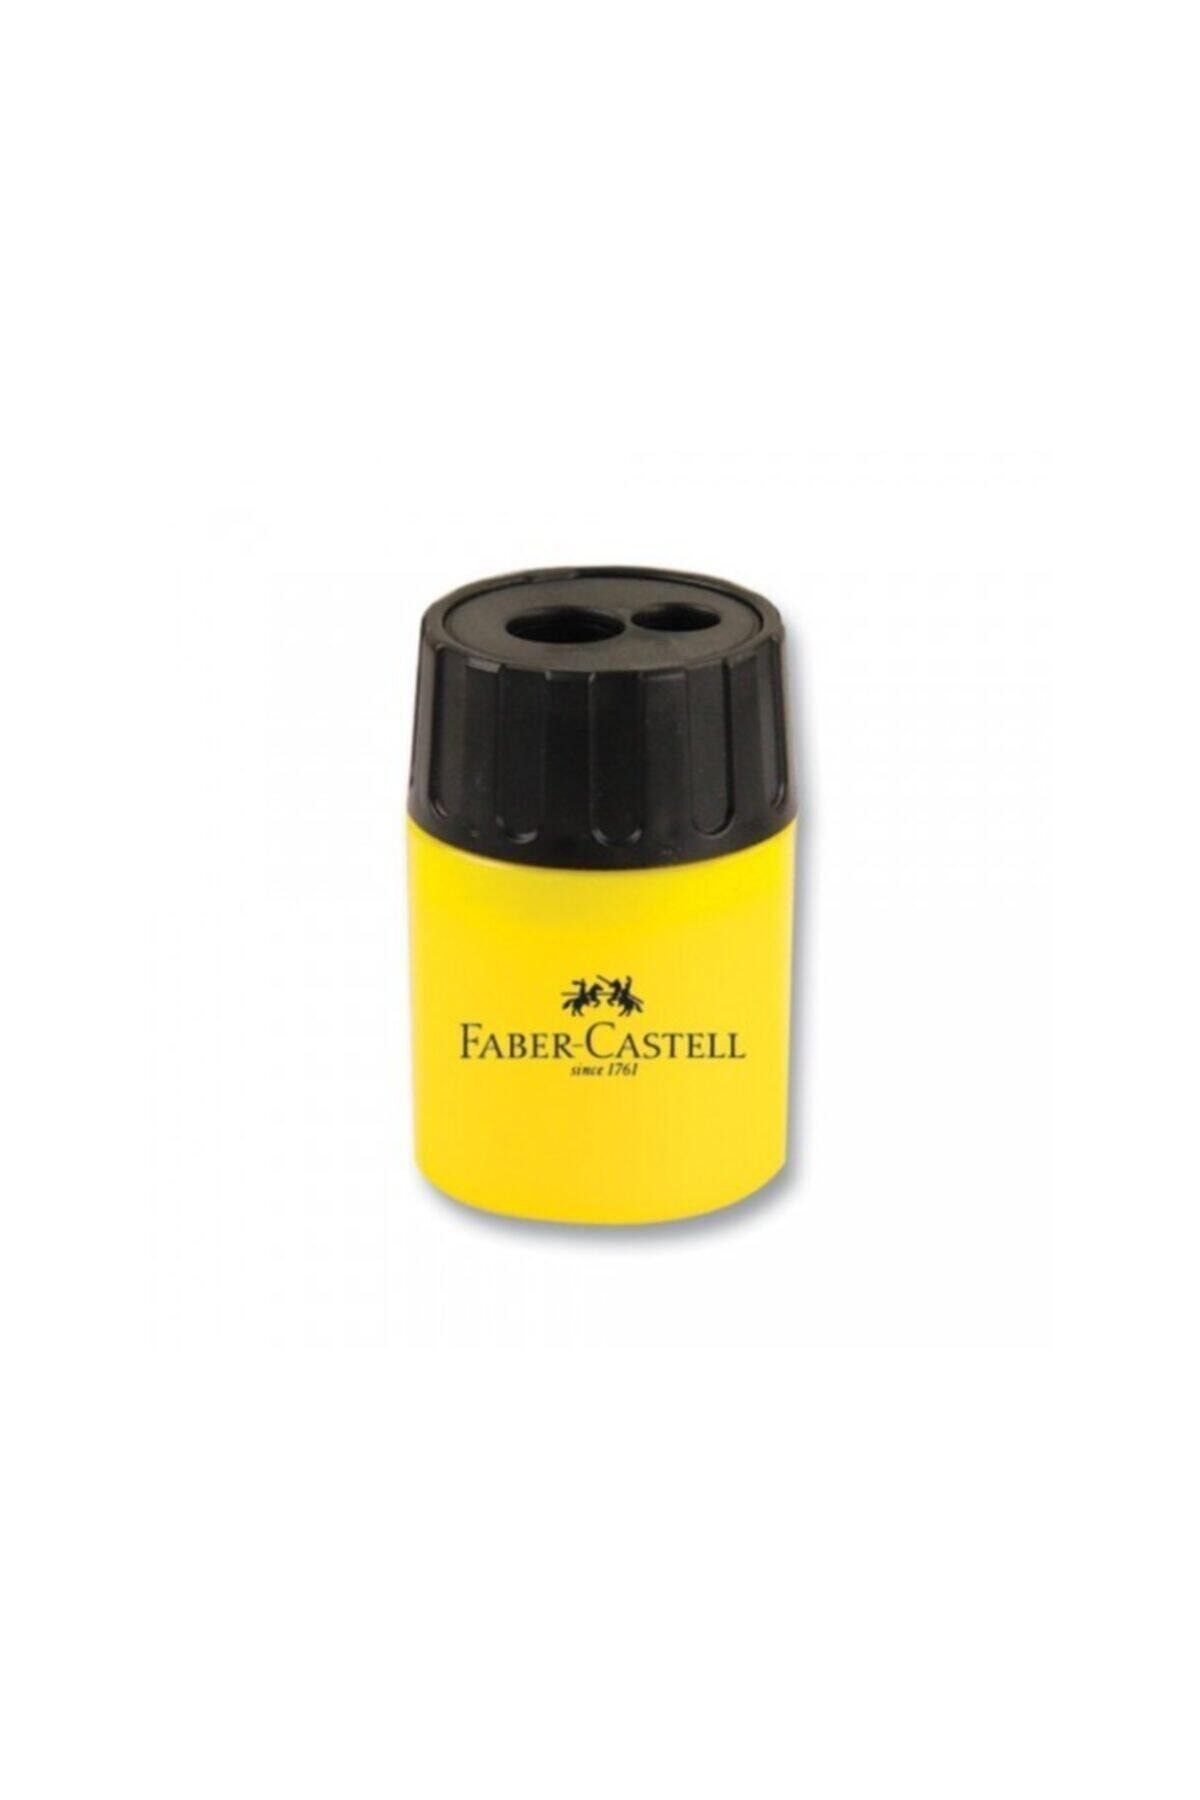 Faber Castell Geniş Hazneli Çiftli Kalemtraş Adet Sarı